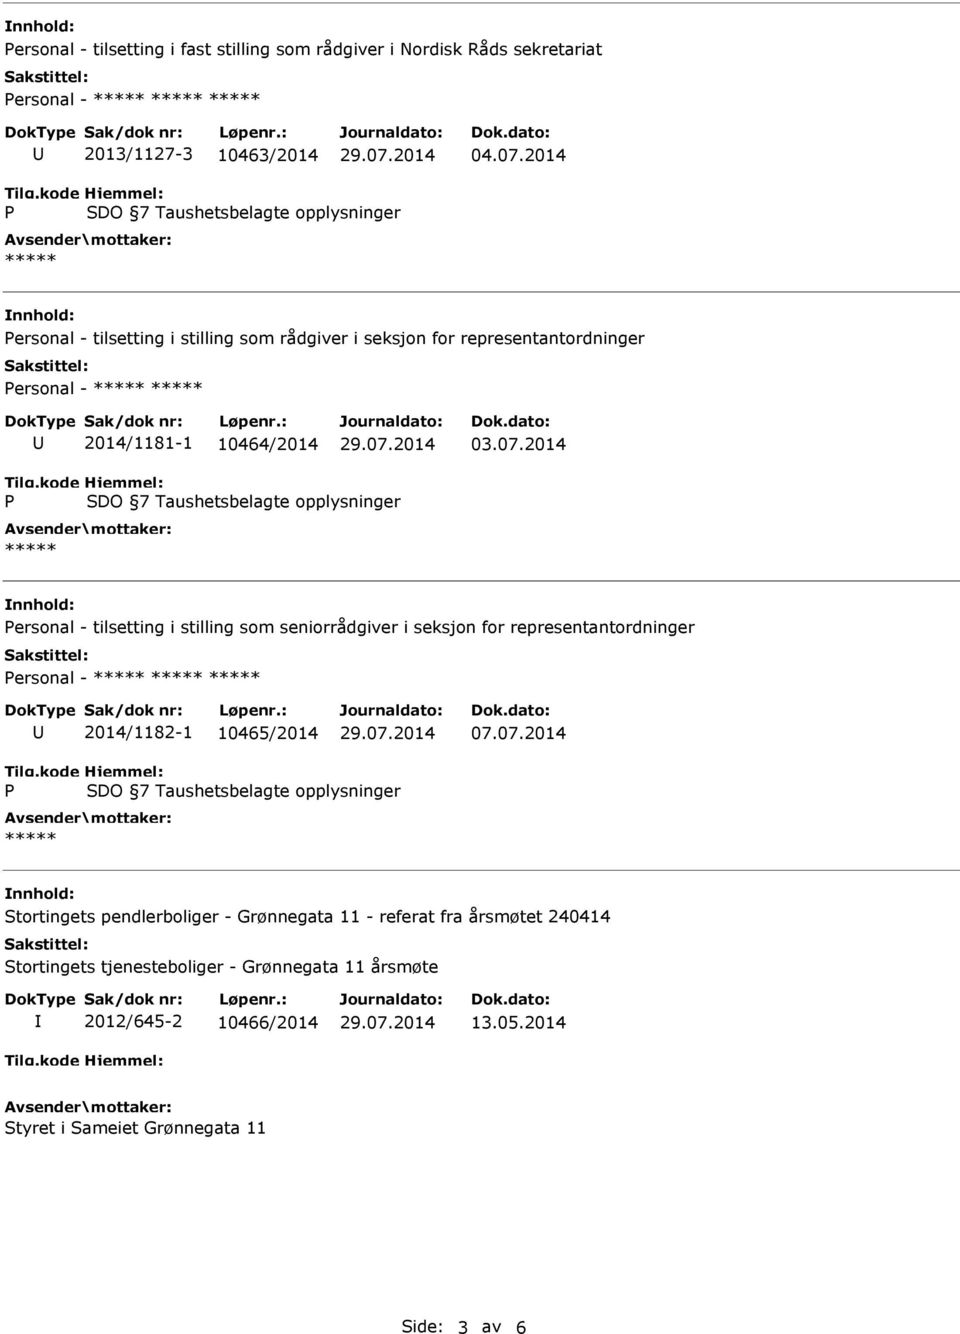 seniorrådgiver i seksjon for representantordninger ersonal - 2014/1182-1 10465/2014 07.